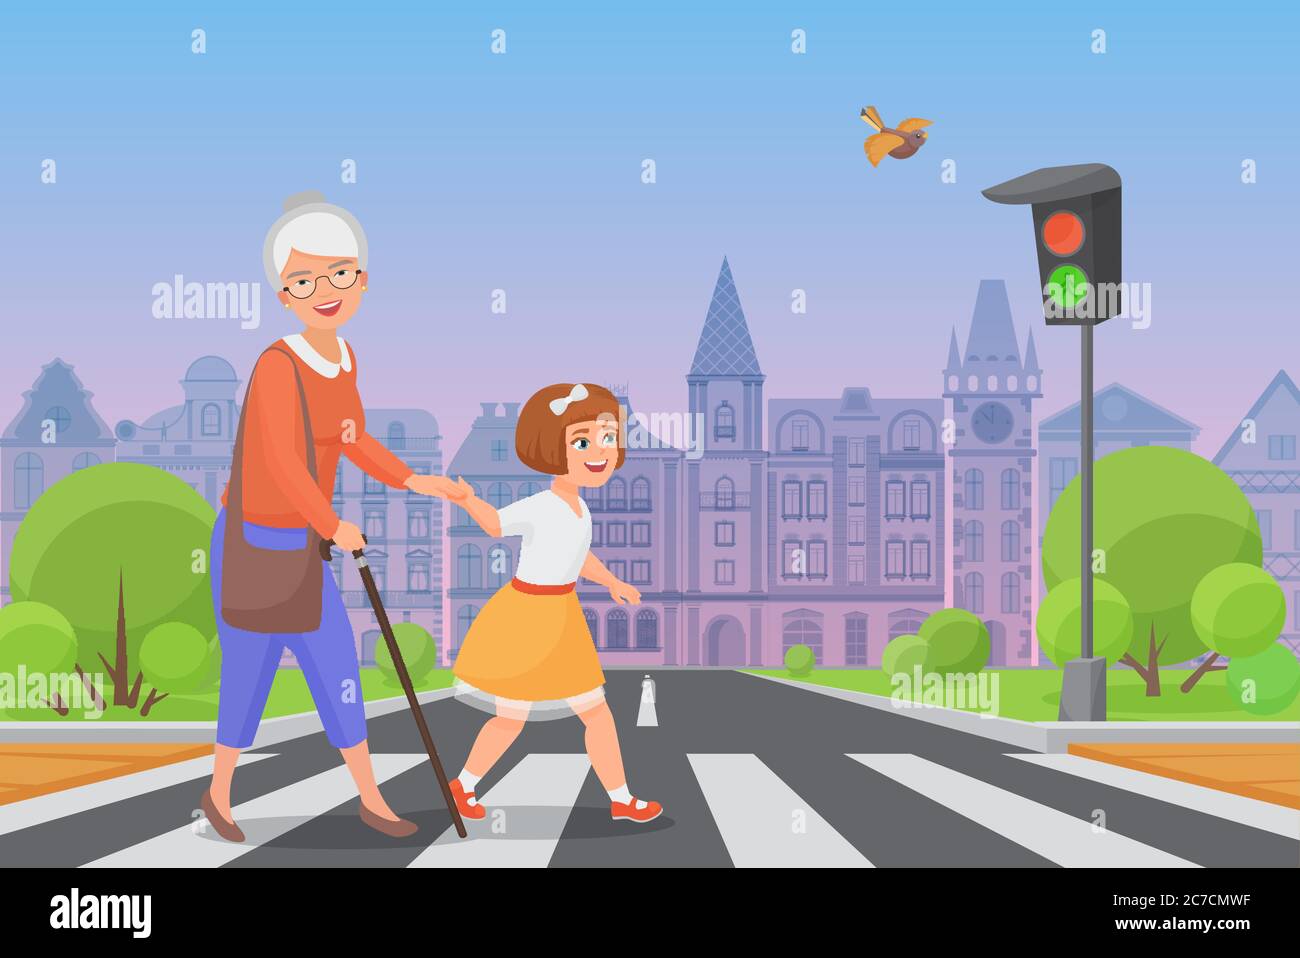 Una ragazza polita aiuta a sorridere la vecchia donna a passare la strada a un passaggio pedonale mentre la luce verde splende. Illustrazione vettoriale a colori Illustrazione Vettoriale